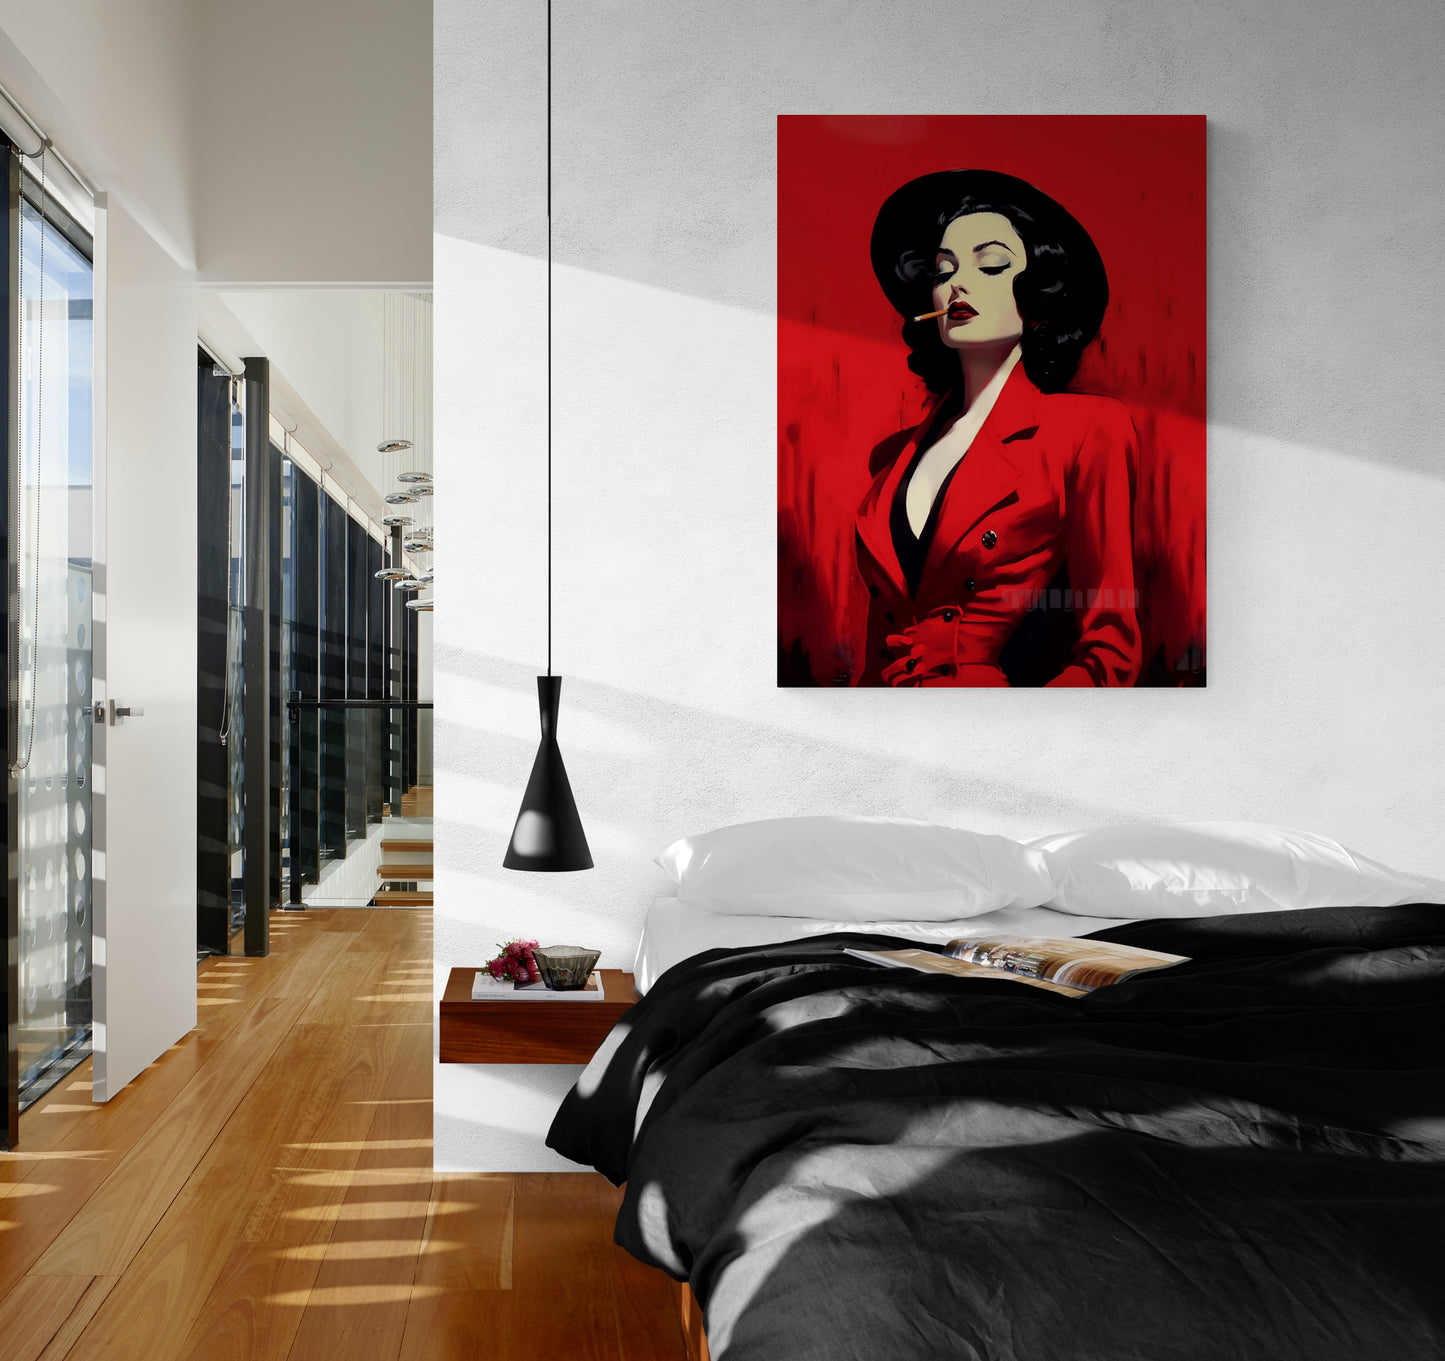 Dans une chambre adulte, le tableau "Femme cigarette" crée une ambiance envoûtant, mêlant charme rétro et modernité.